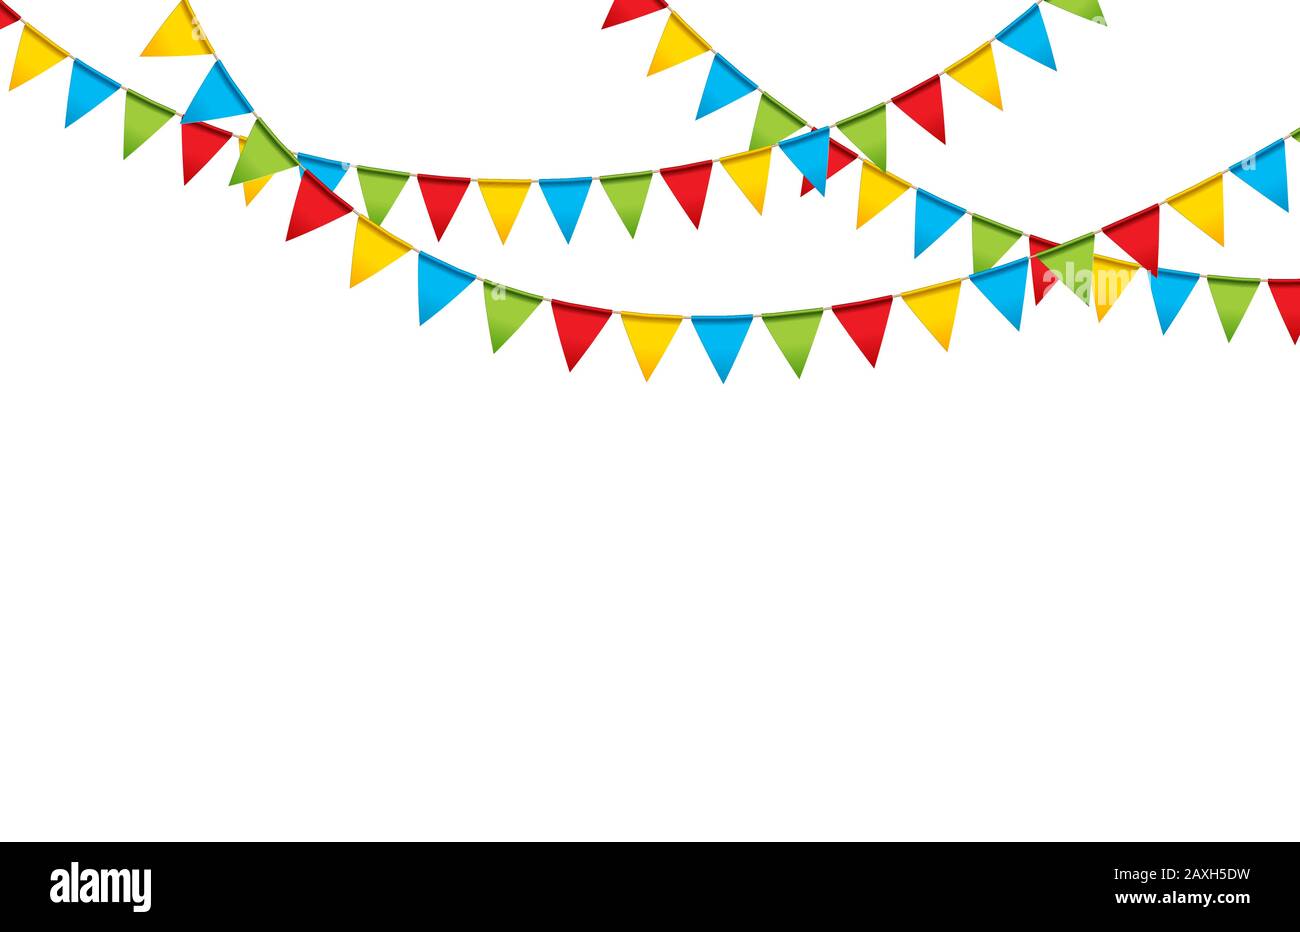 Bandierine Colorate Per Feste Vettore, Celebrazione, Decorazione Di Stamina  Per Feste, Colorato PNG e Vector per il download gratuito